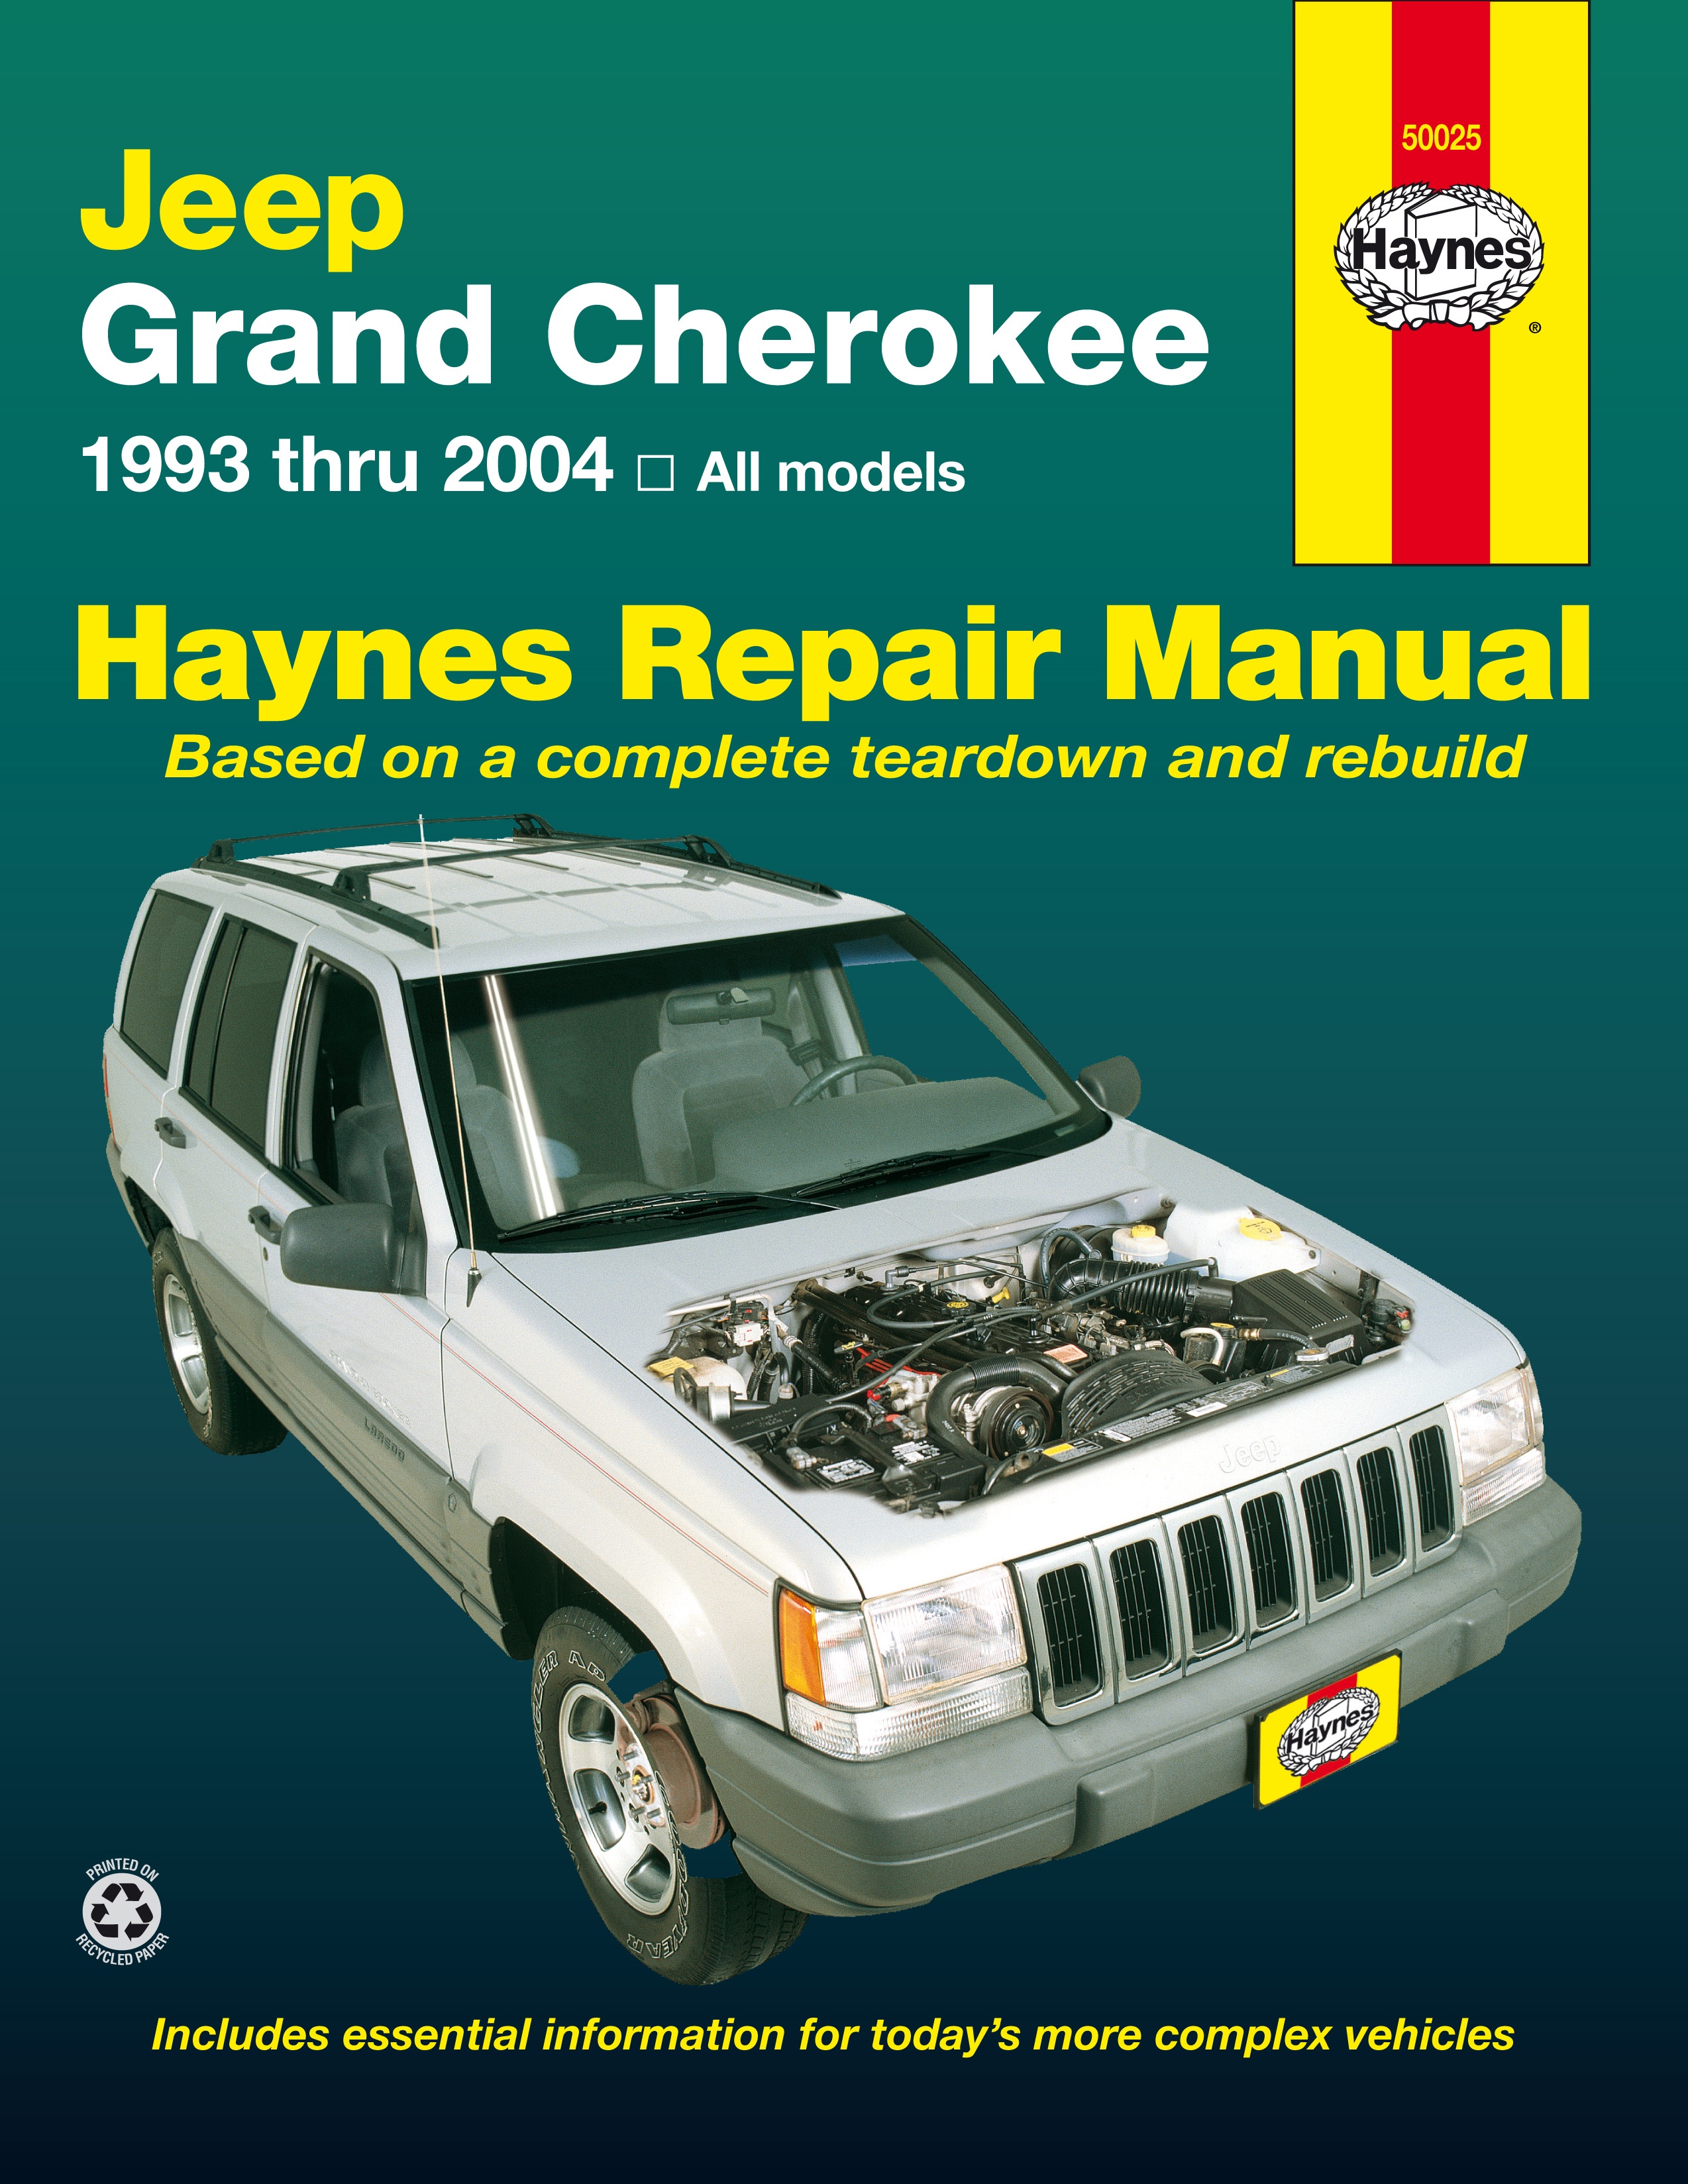 JEEP GRAND CHEROKEE (19932004) instrukcja napraw Haynes